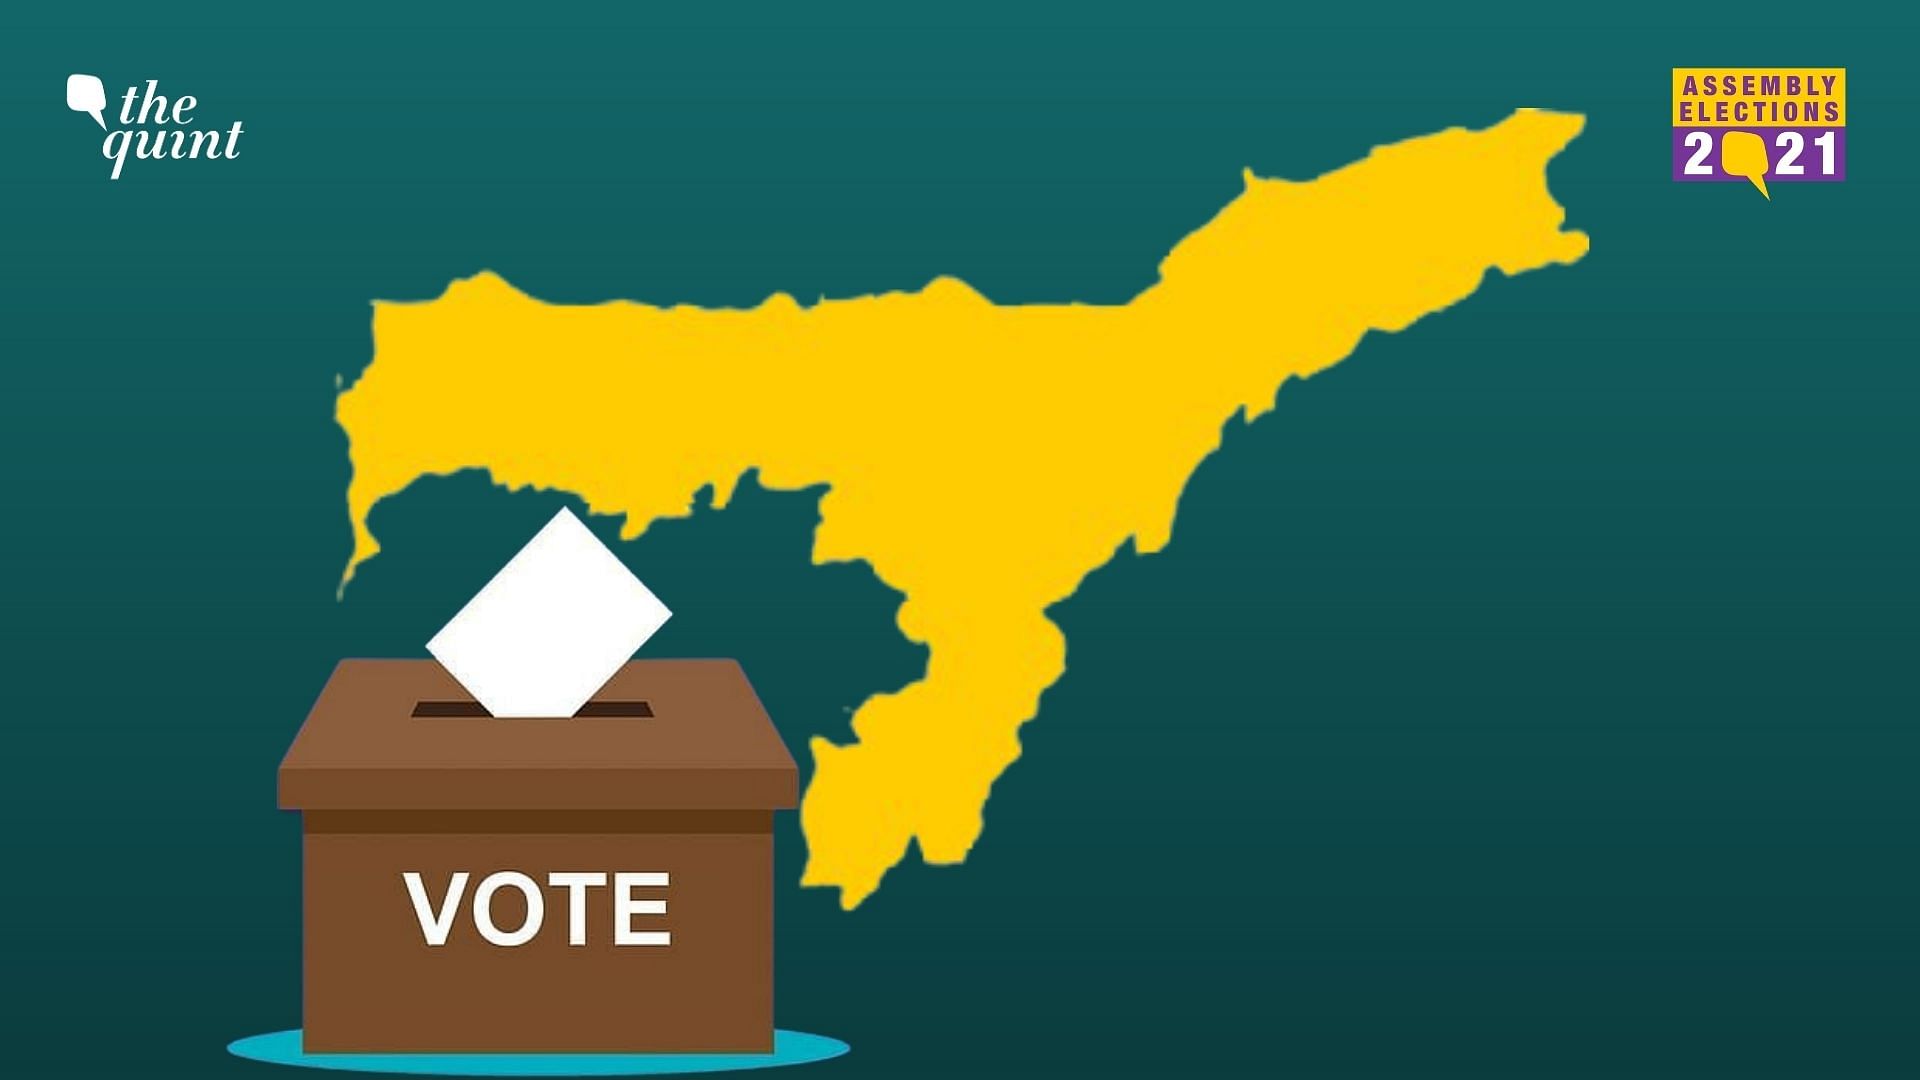 Assam Assembly Election 2021